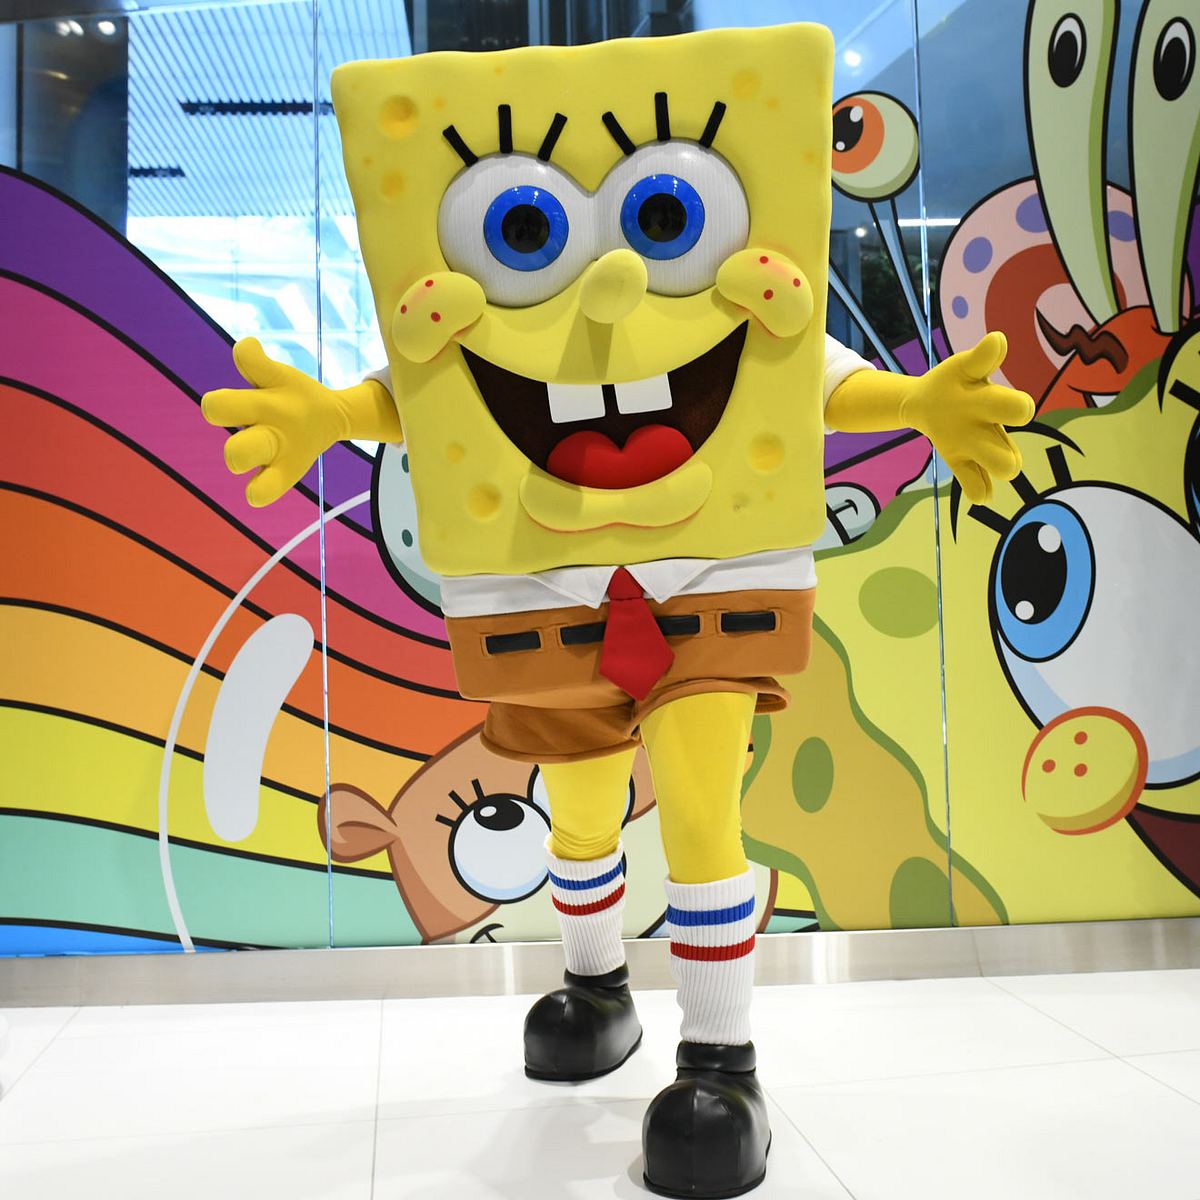 Keine andere Zeichentrickfigur hat es zu so großer Beliebtheit geschafft, wie Spongebob Schwammkopf. Schon seit zwanzig Jahren verzaubert er seine Fans. Jetzt kommt das große Outing!